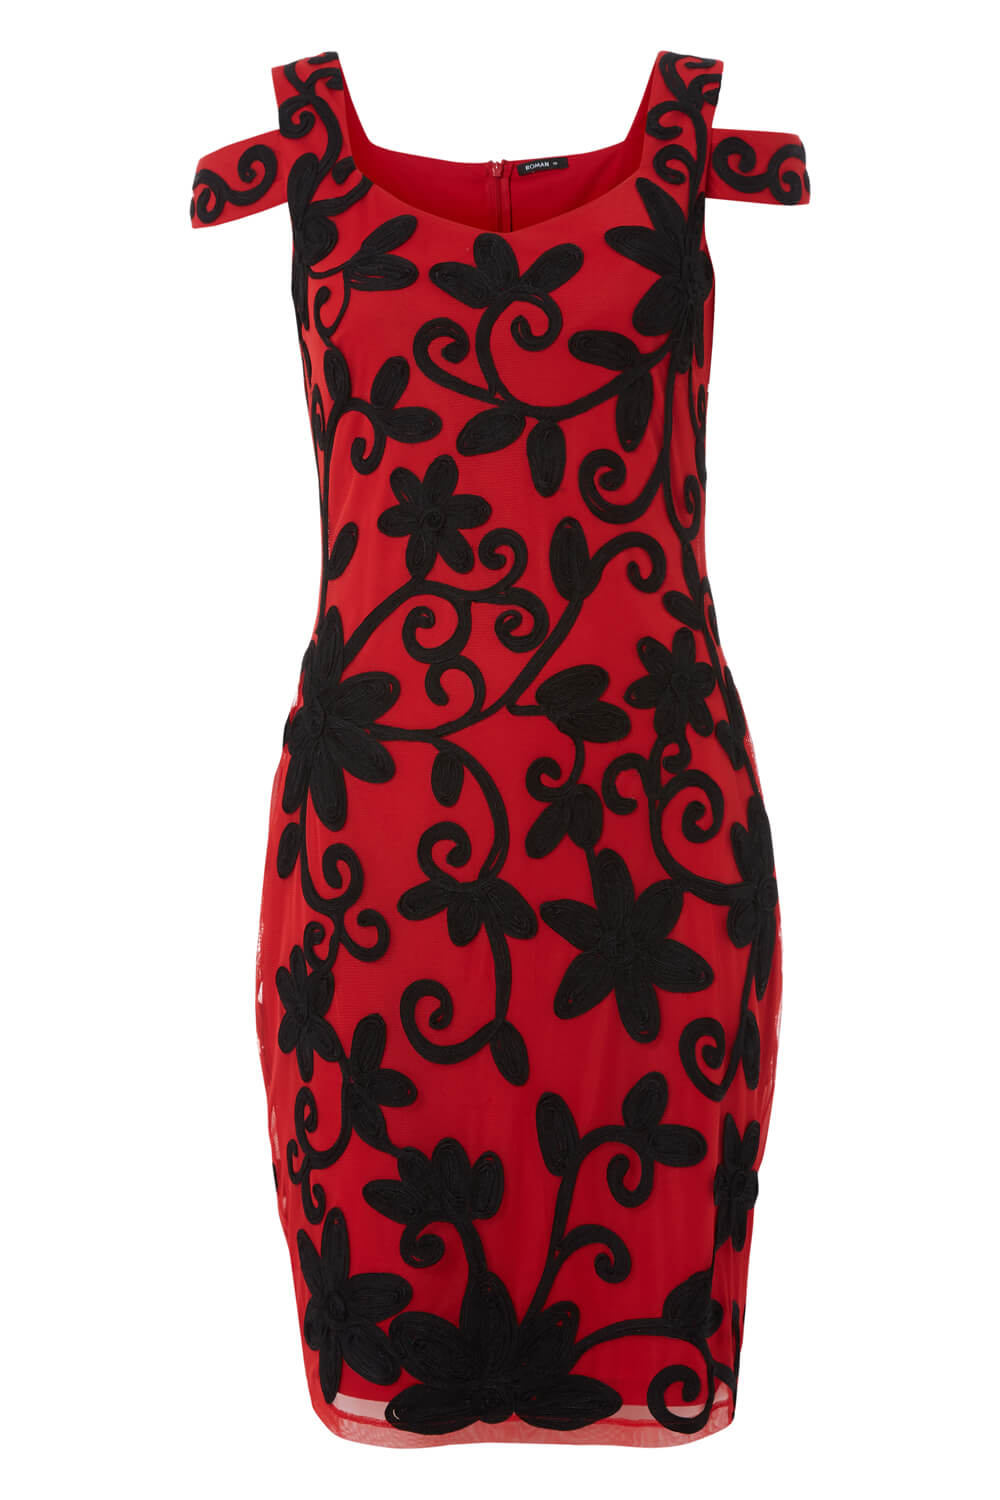 Red Embroidered Cold Shoulder Floral Dress, Image 4 of 4